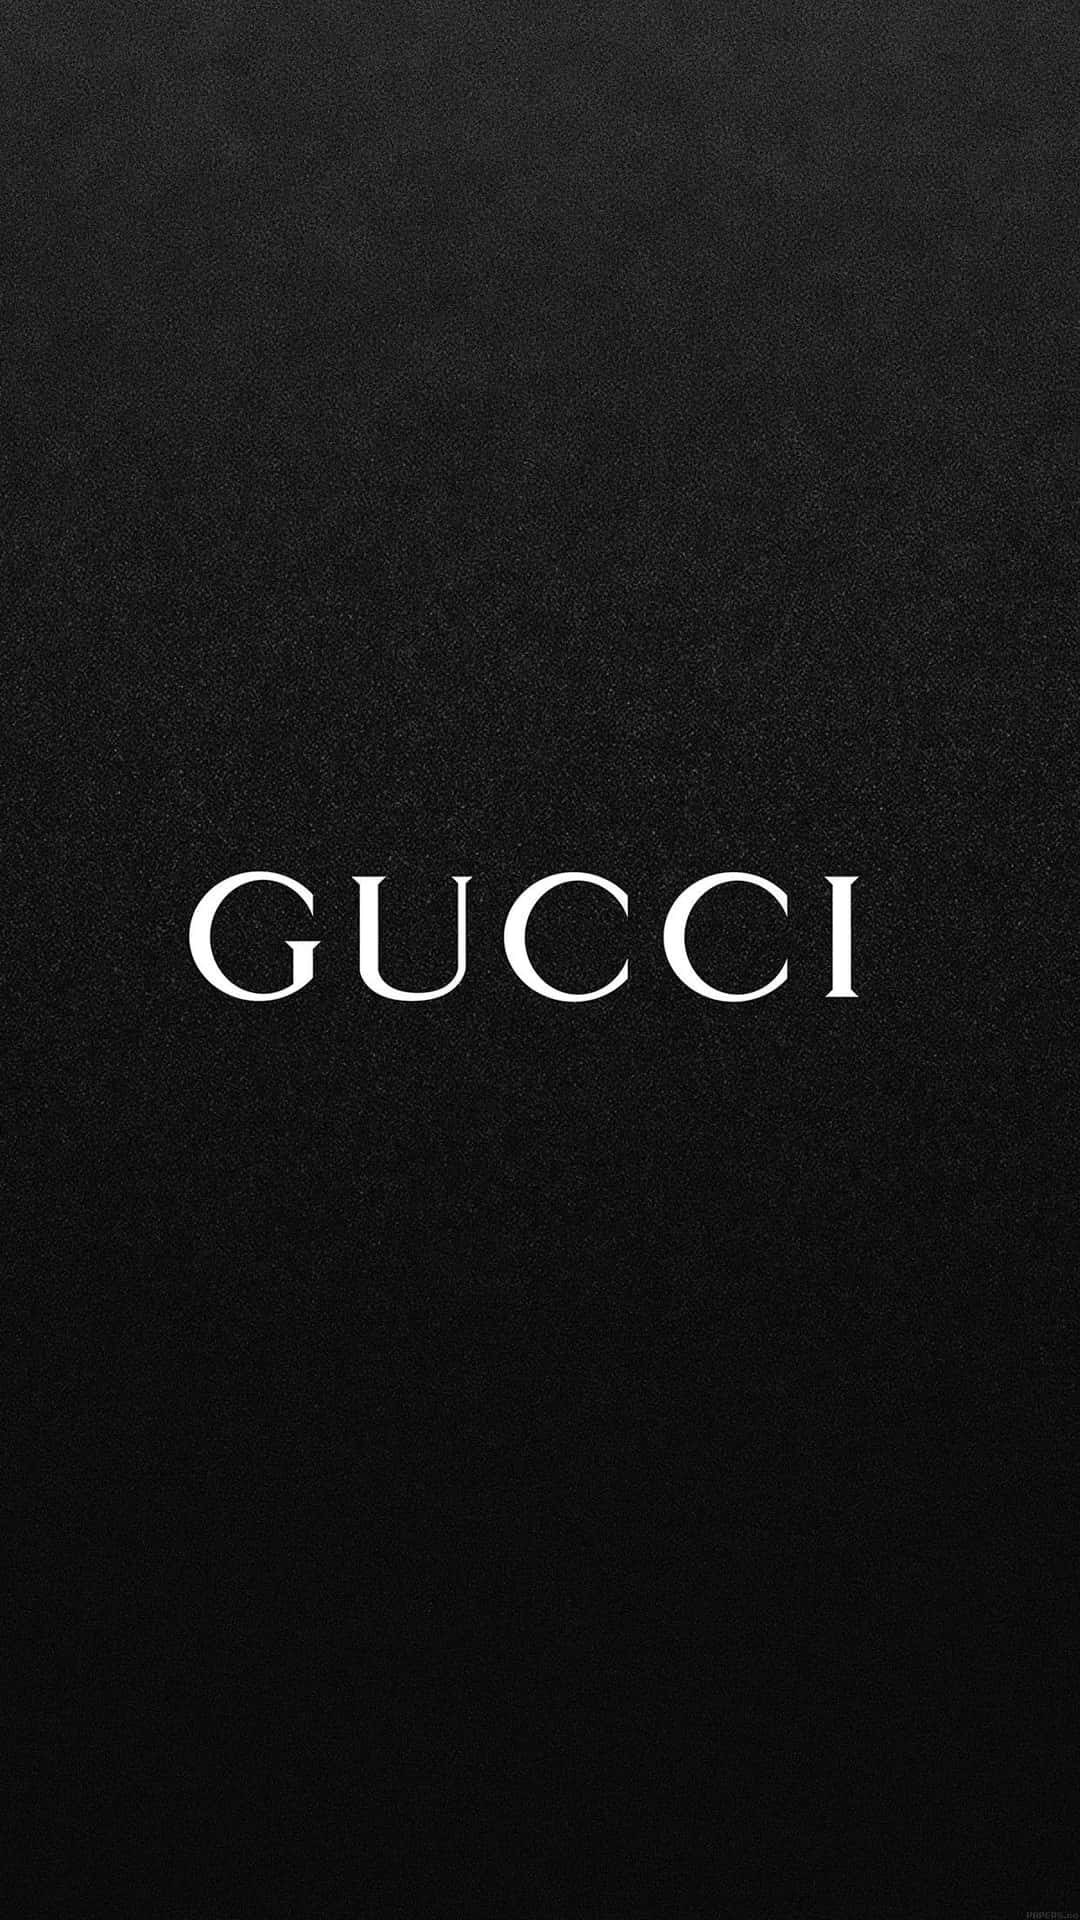 Extravagant Gucci Phone Wallpaper